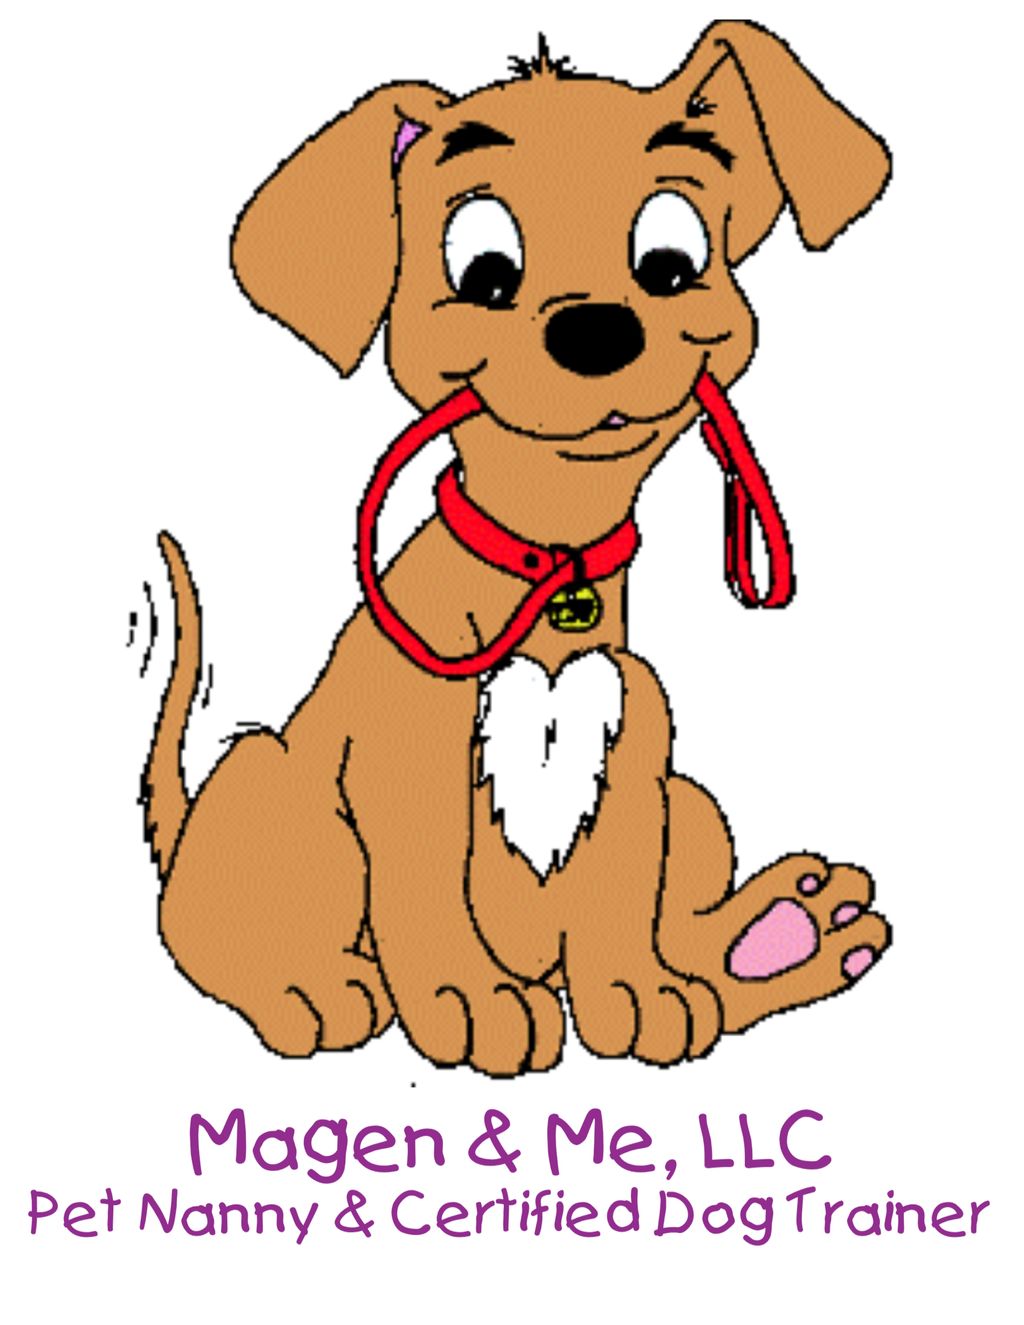 Magen & Me, LLC